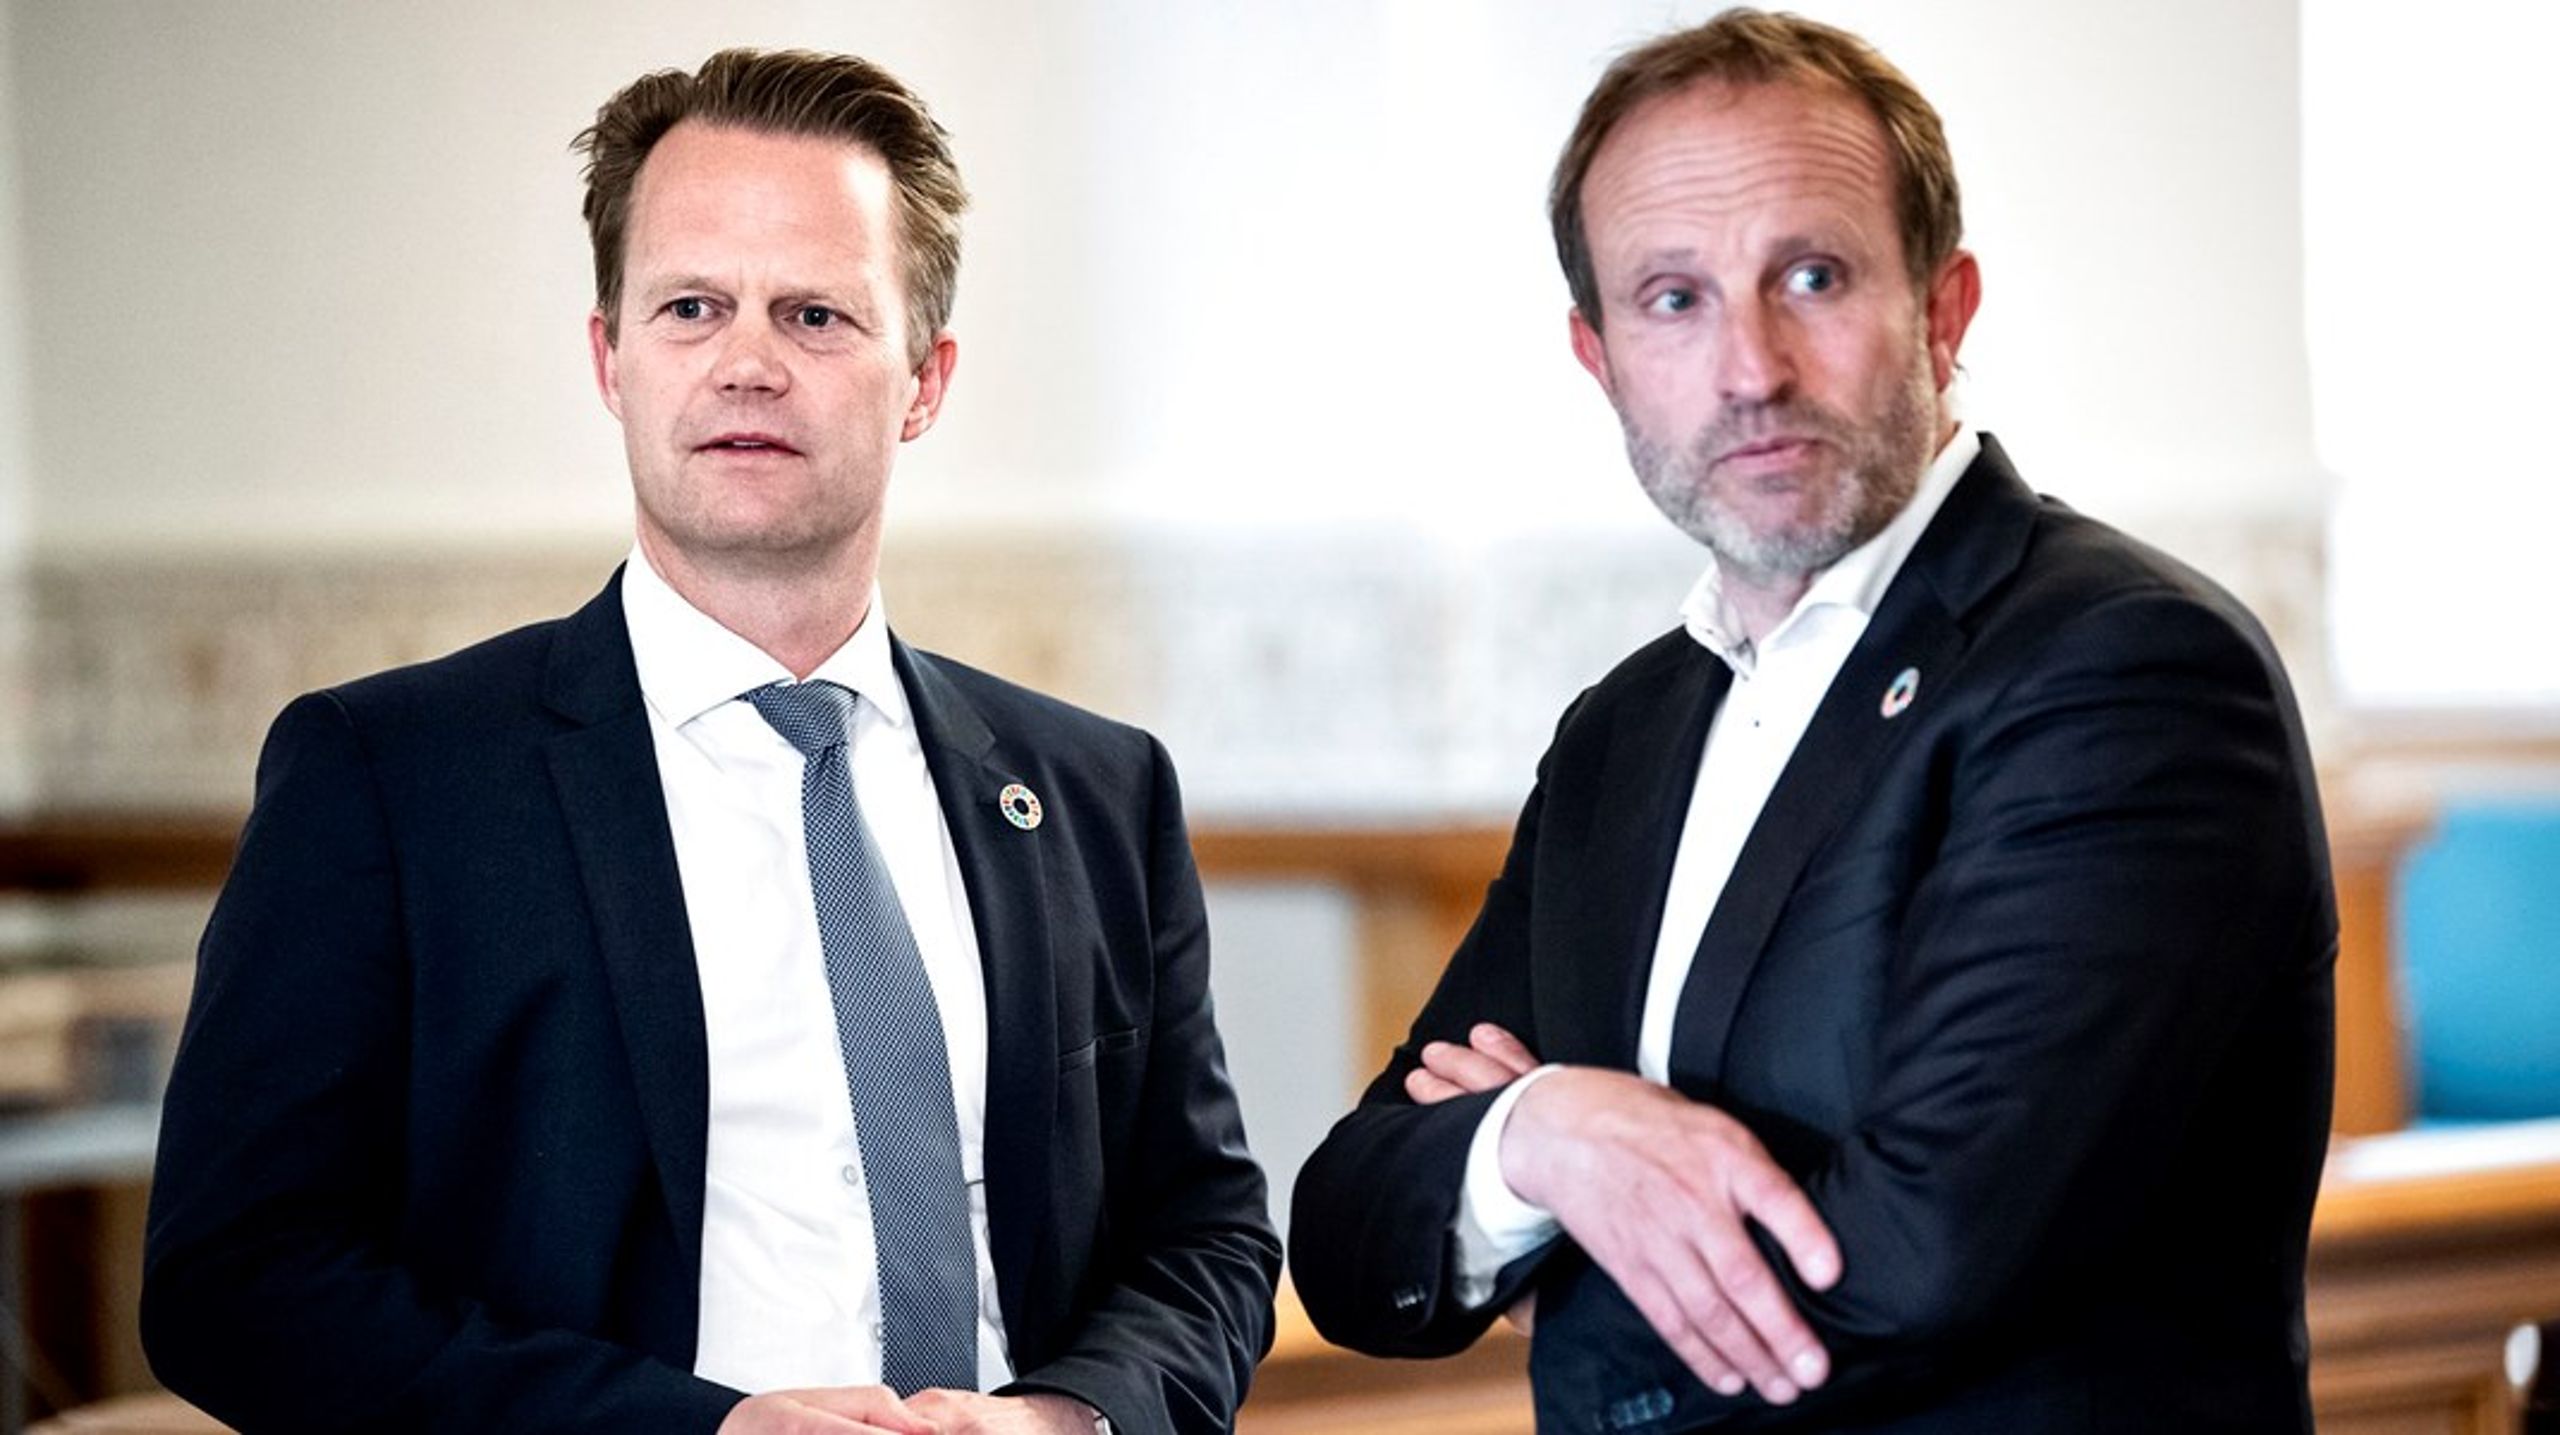 Udenrigsordfører Martin Lidegaard (R) anerkender, at regeringen og udenrigsminister Jeppe Kofod (S) har stoppet nedskæringen af Udenrigstjenesten, men det er ikke nok, mener Radikale Venstre.